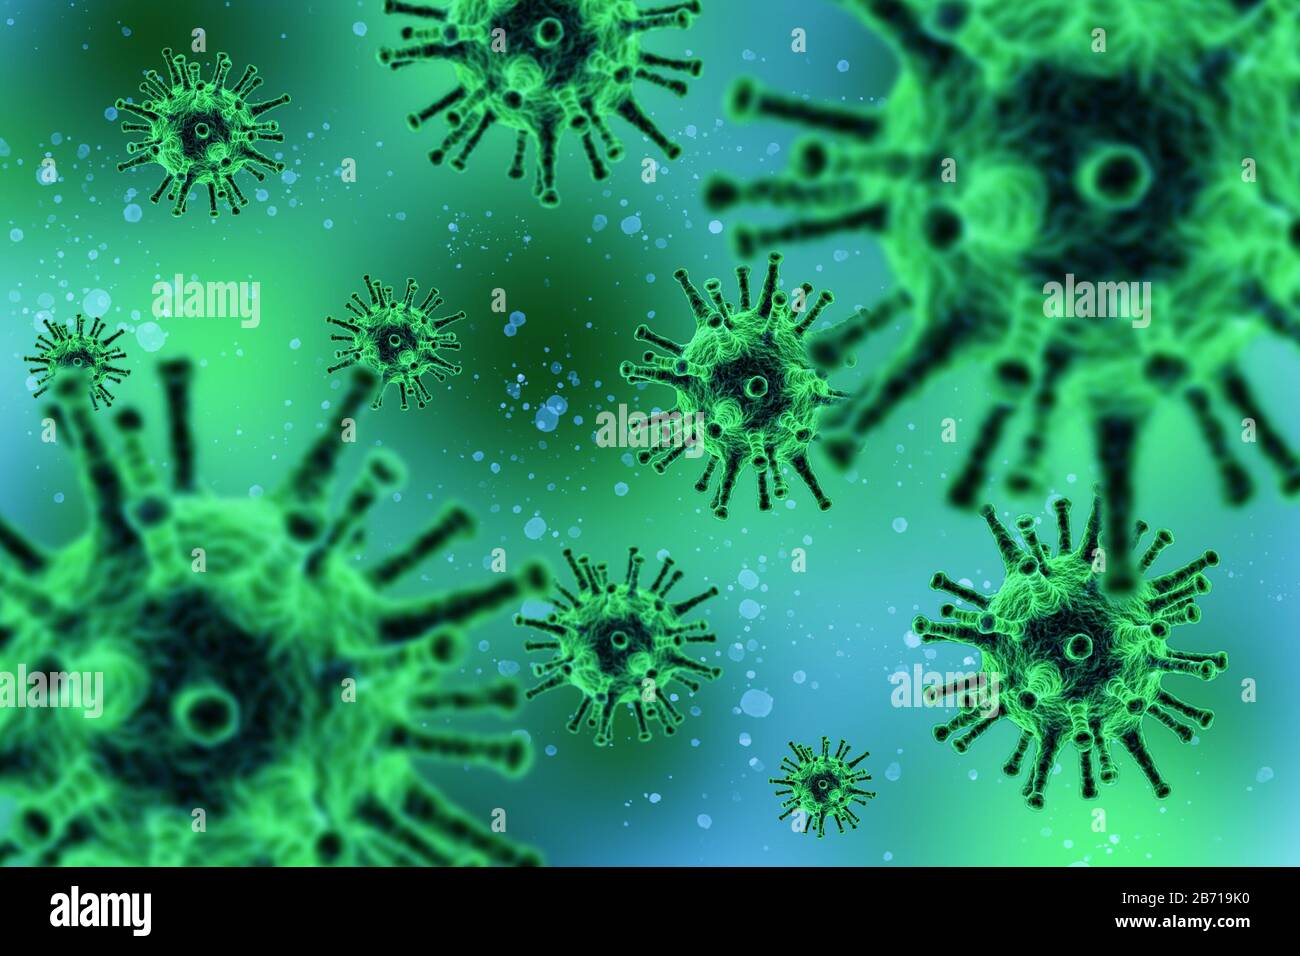 Corona virus ataque concepto, muchos virus ataque sobre fondo verde Foto de stock